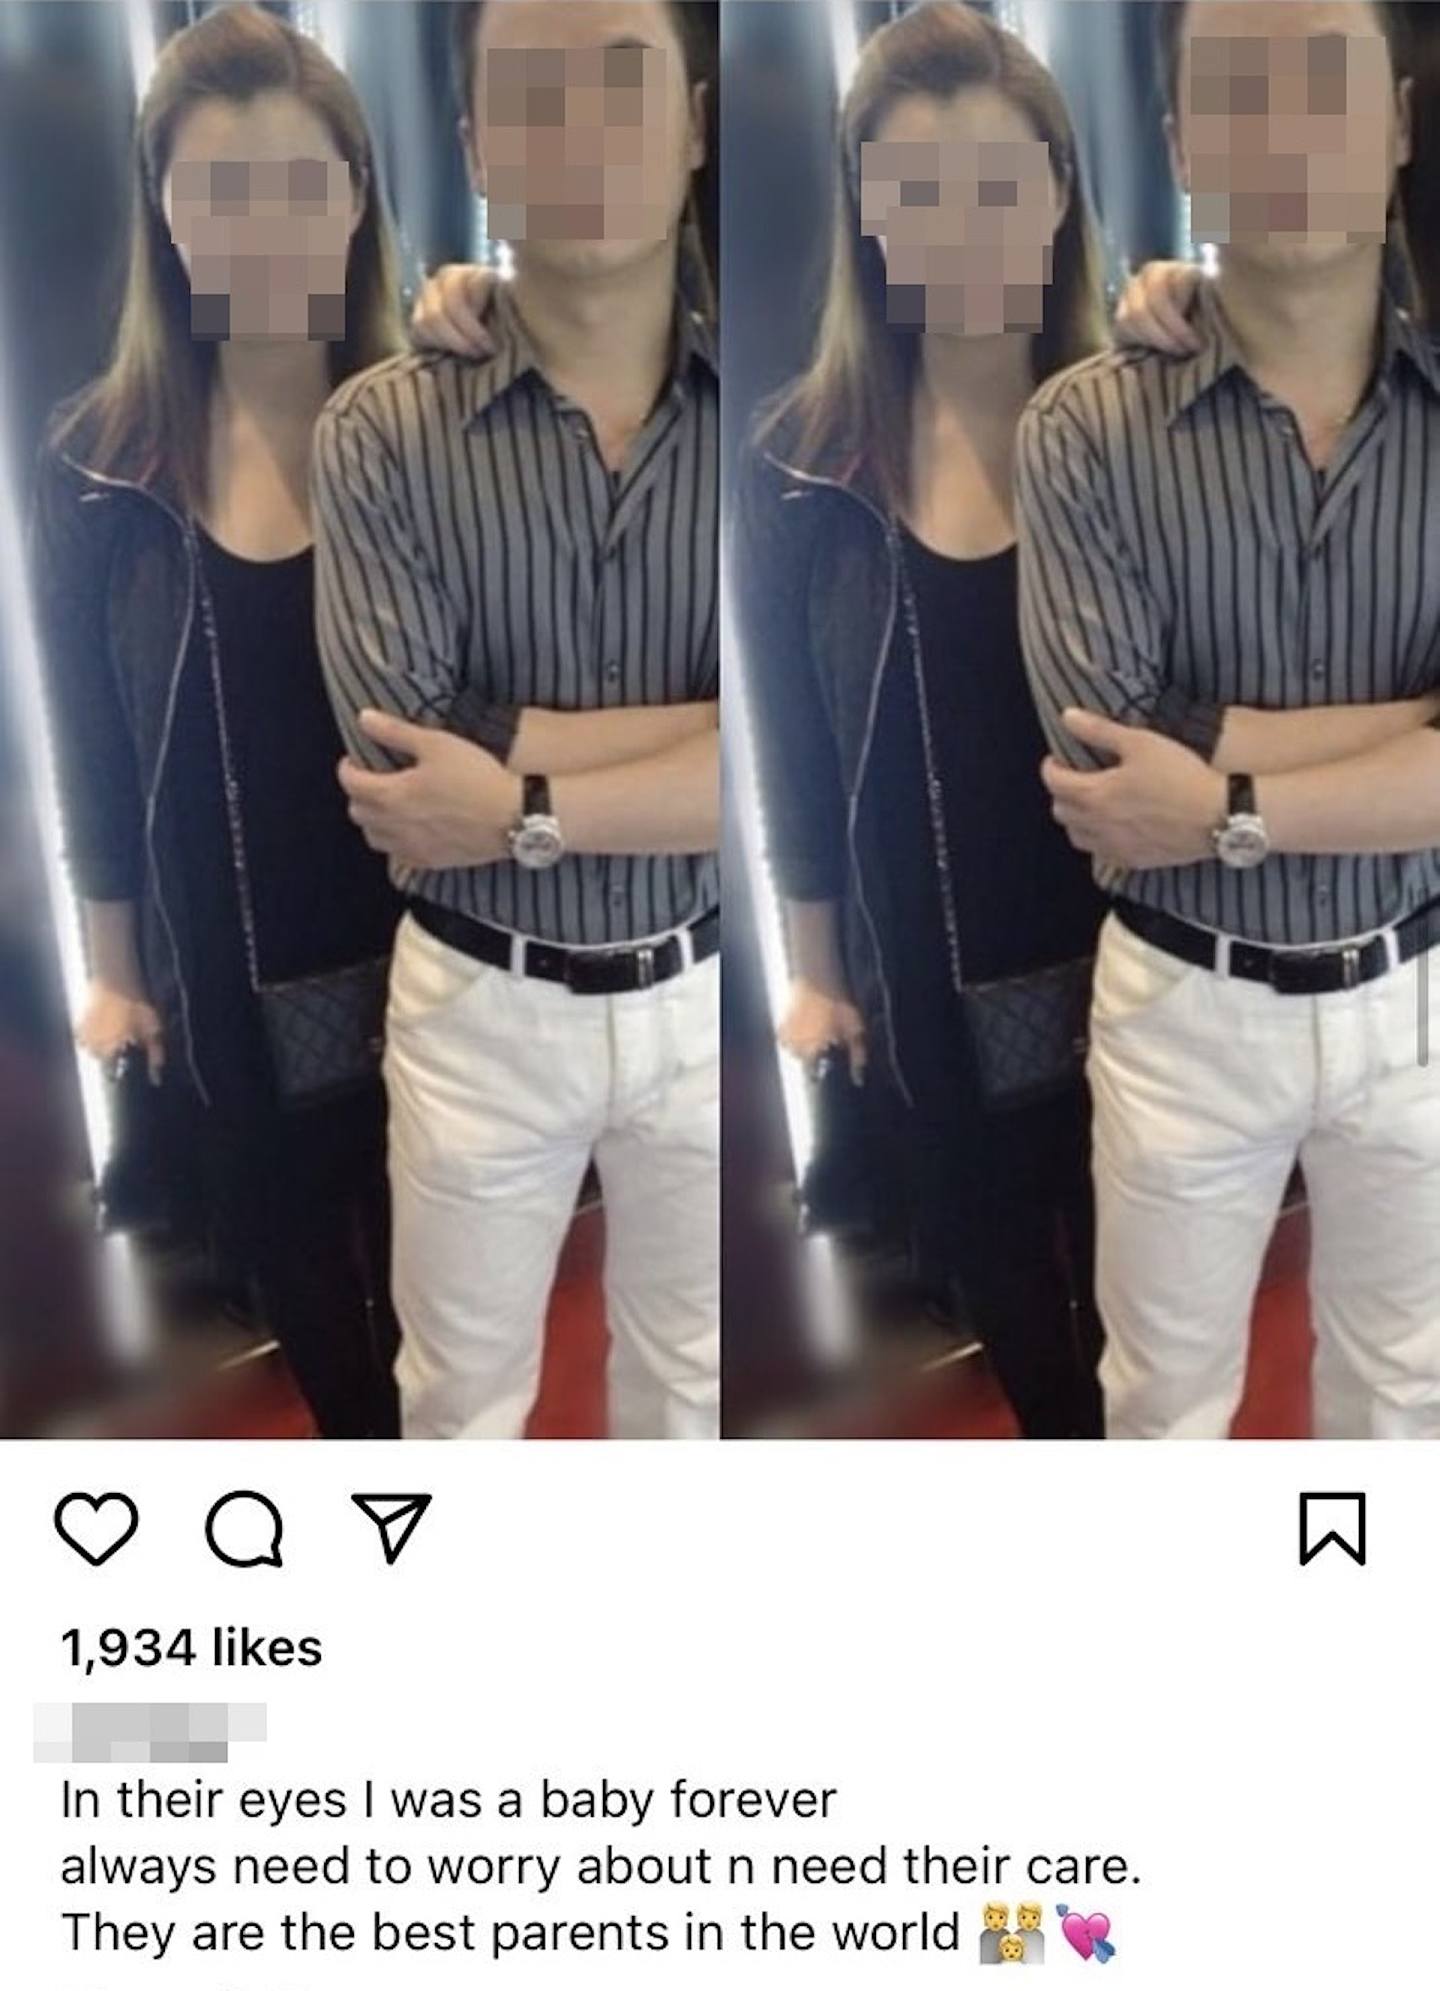 潘的姐姐過往曾於Instagram張貼父母合照。